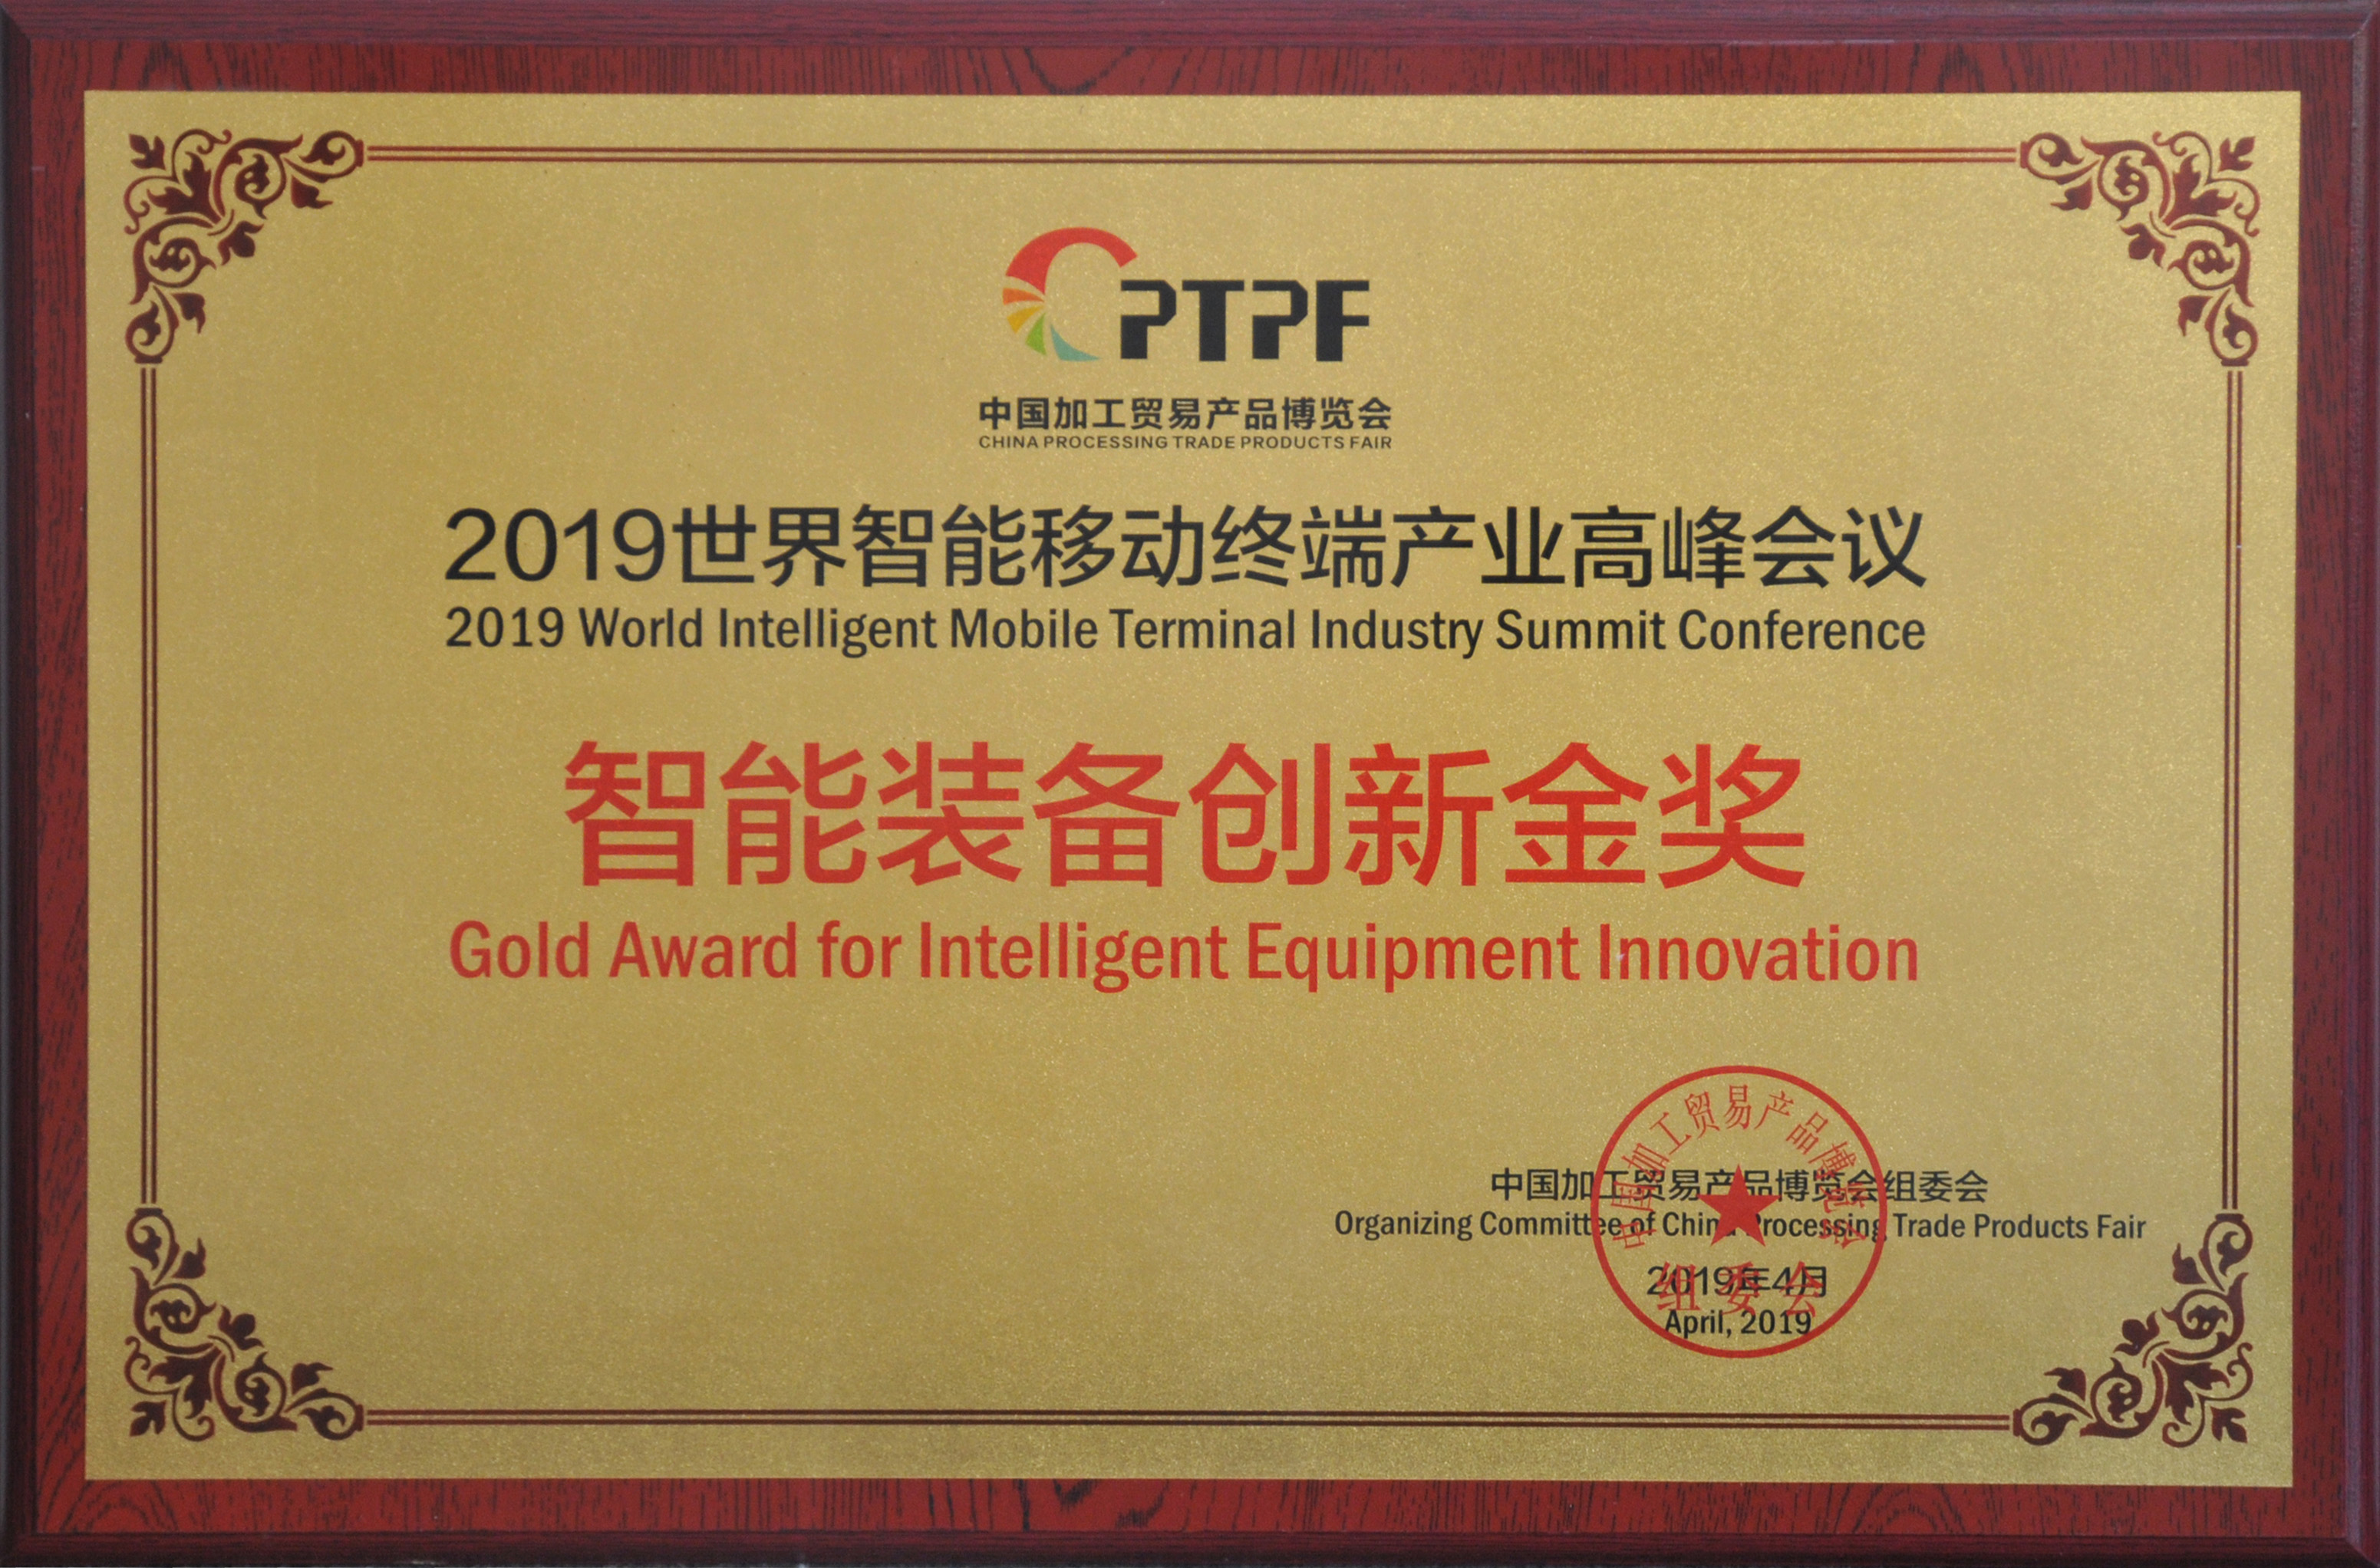 第十一屆中國加工貿易產品博覽會 2019世界智能移動終端產業高峰會議 智能裝備創新金獎